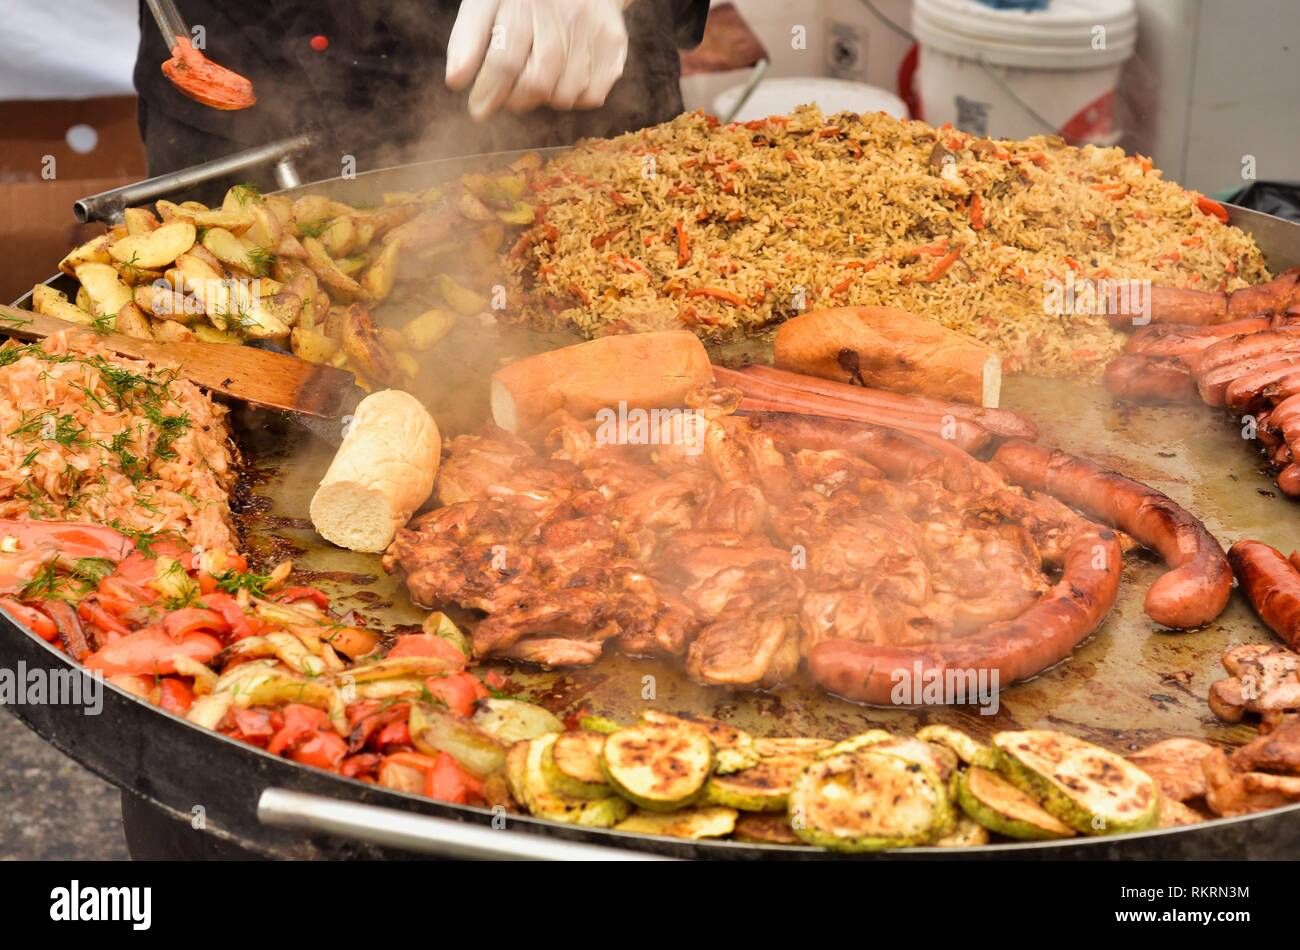 Scomposto il cibo di strada su un ampio vassoio di metallo close up.fritto di pollo, salsicce, le zucchine fritte,carne, pesce,Uzbek pilaf, patate fritte e pane bianco. Foto Stock